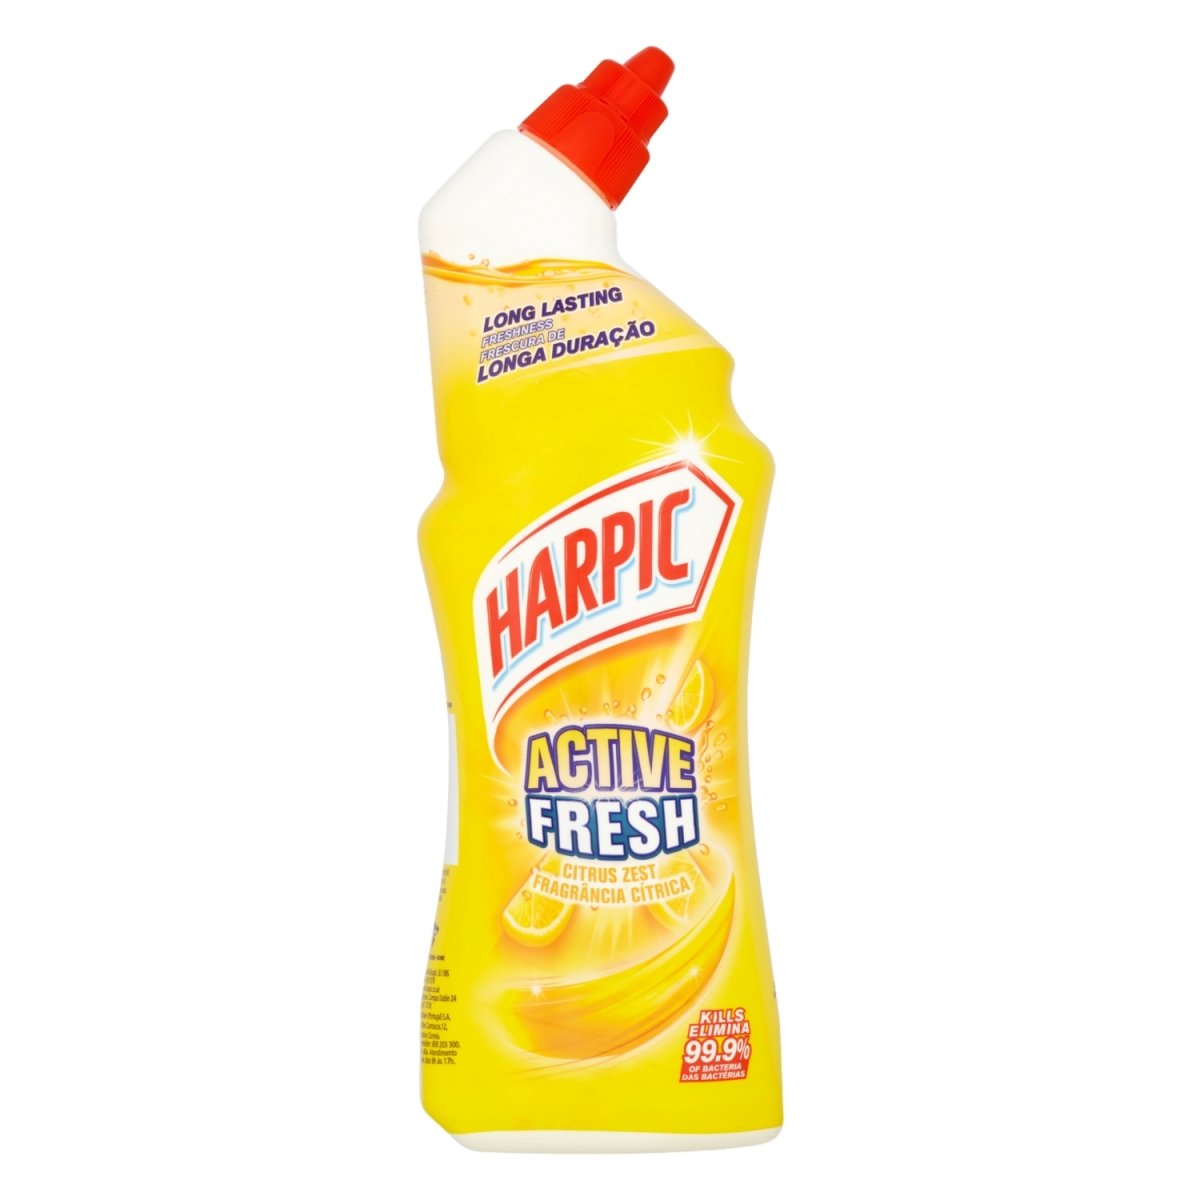 Gel WC Harpic javel triple action, citron-pamplemousse - 750 ml